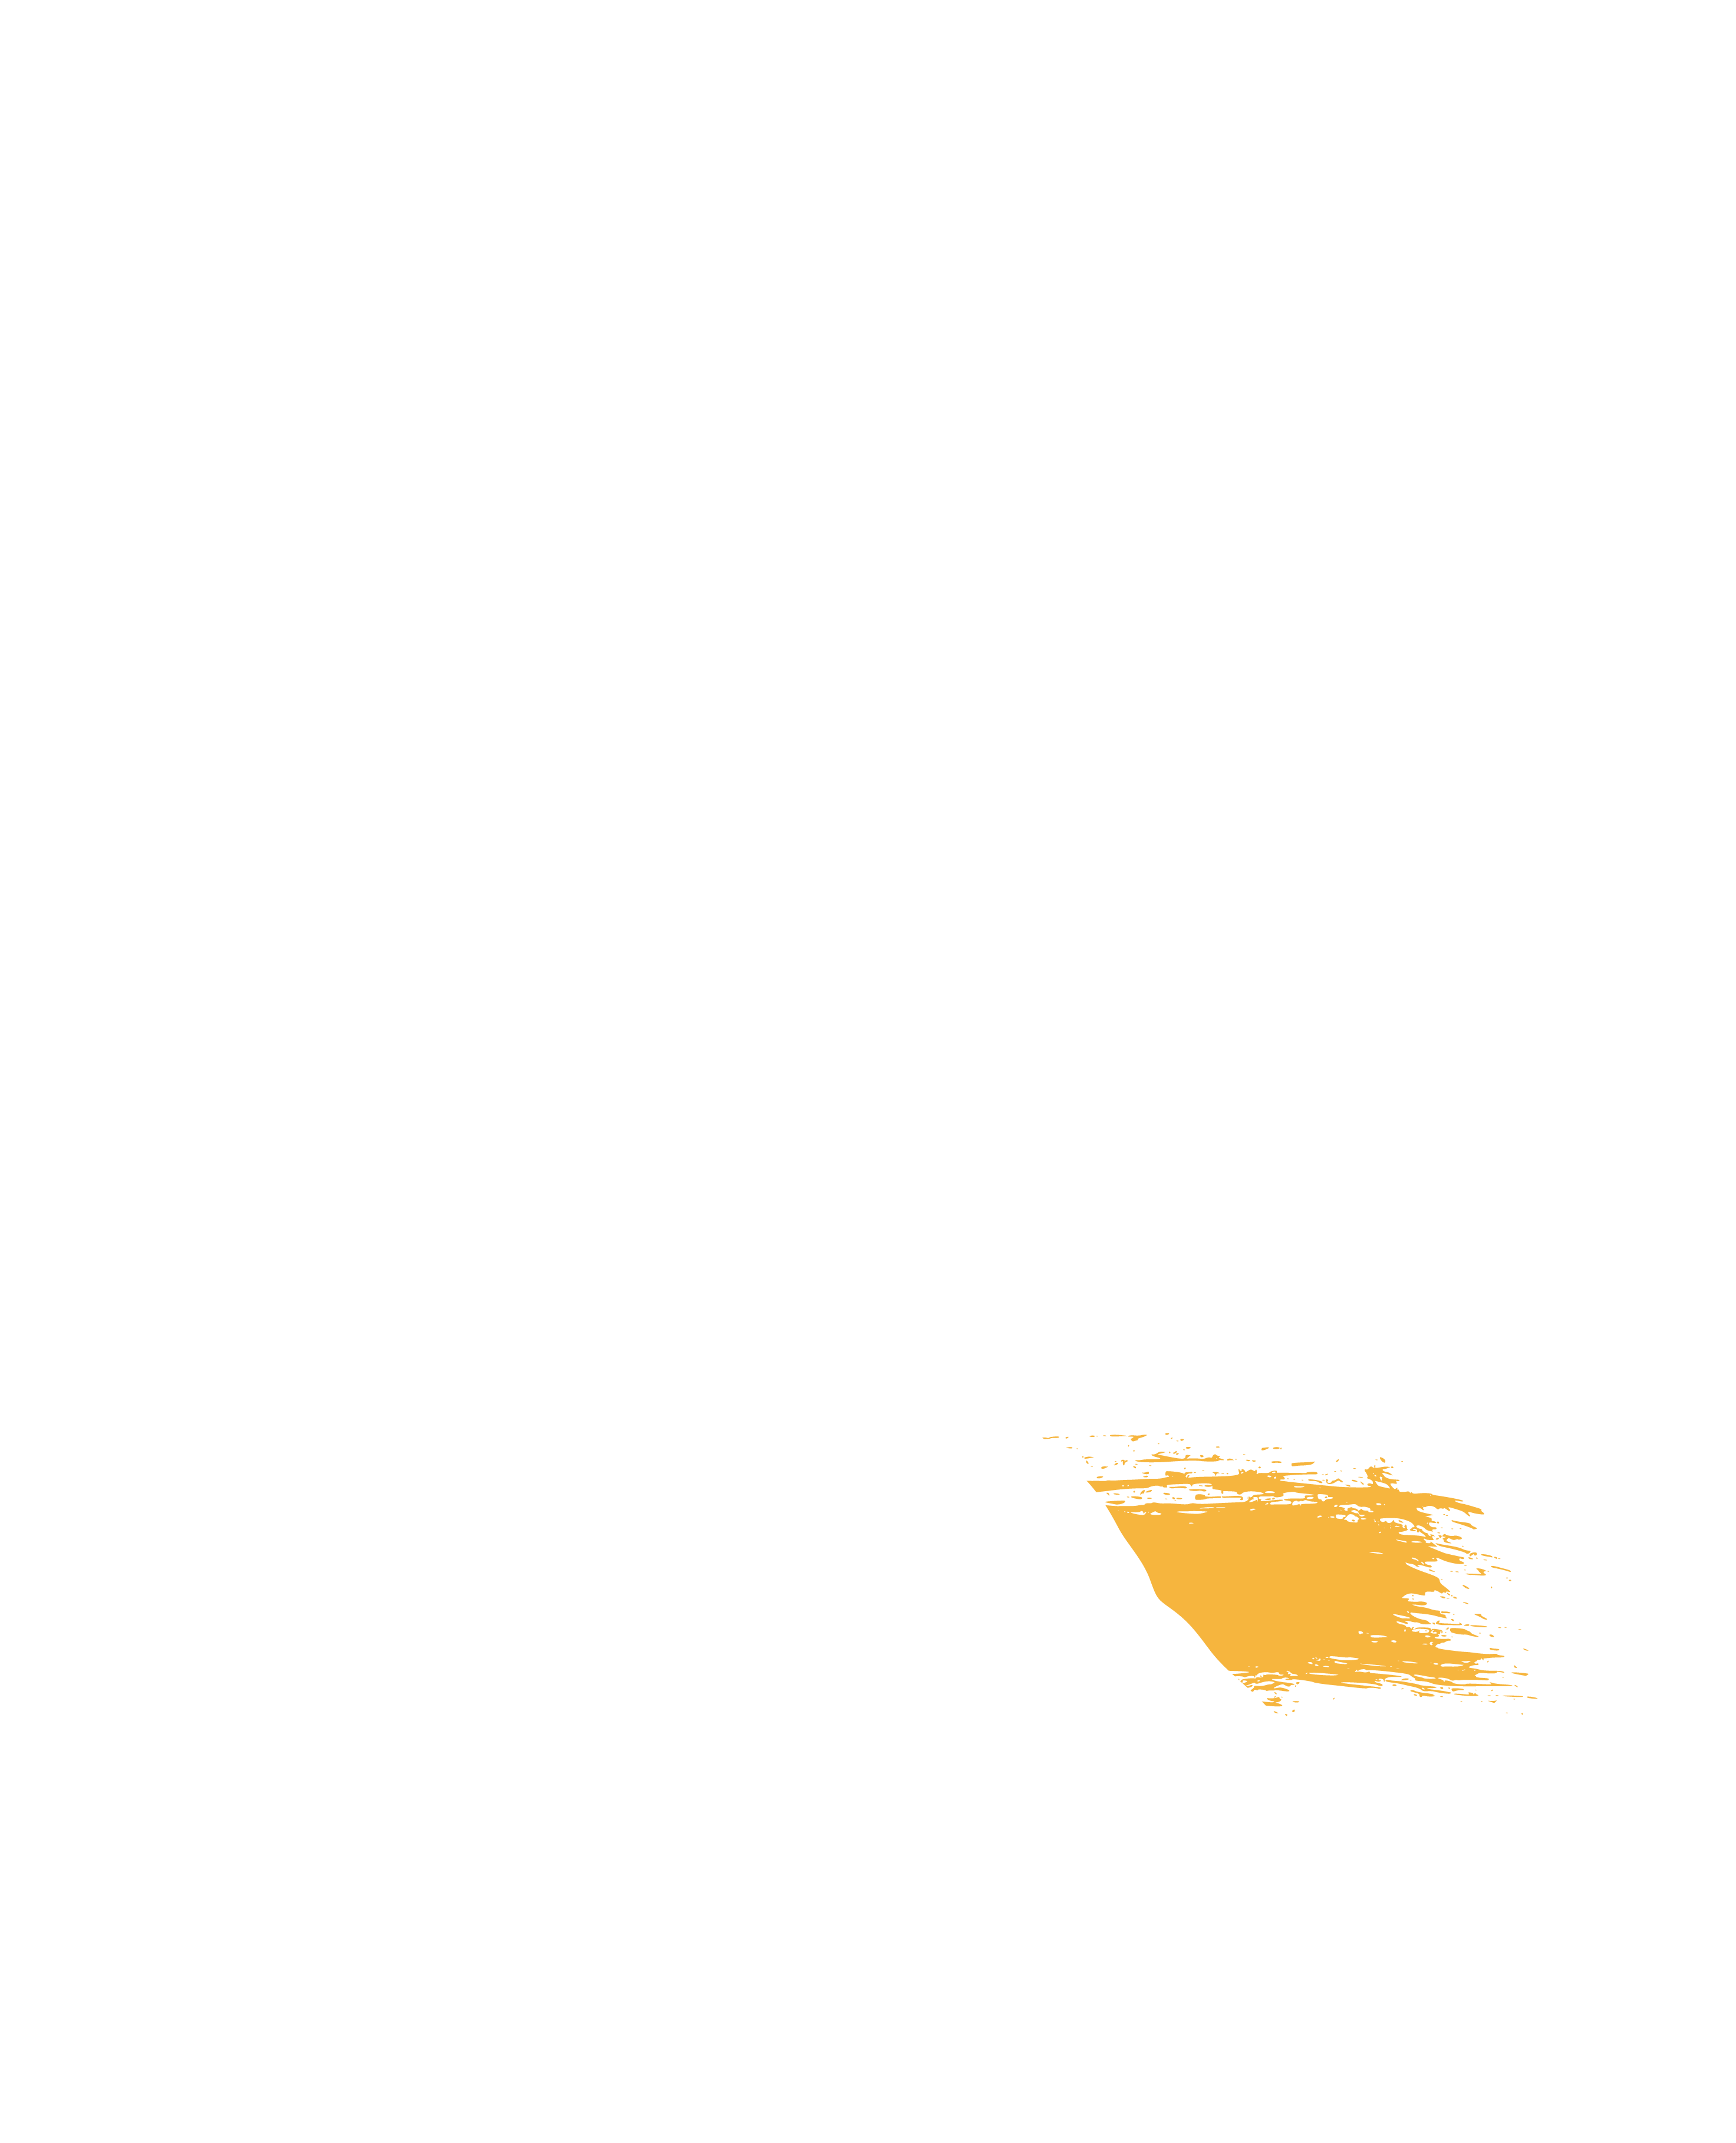 Mapa Sinaloa